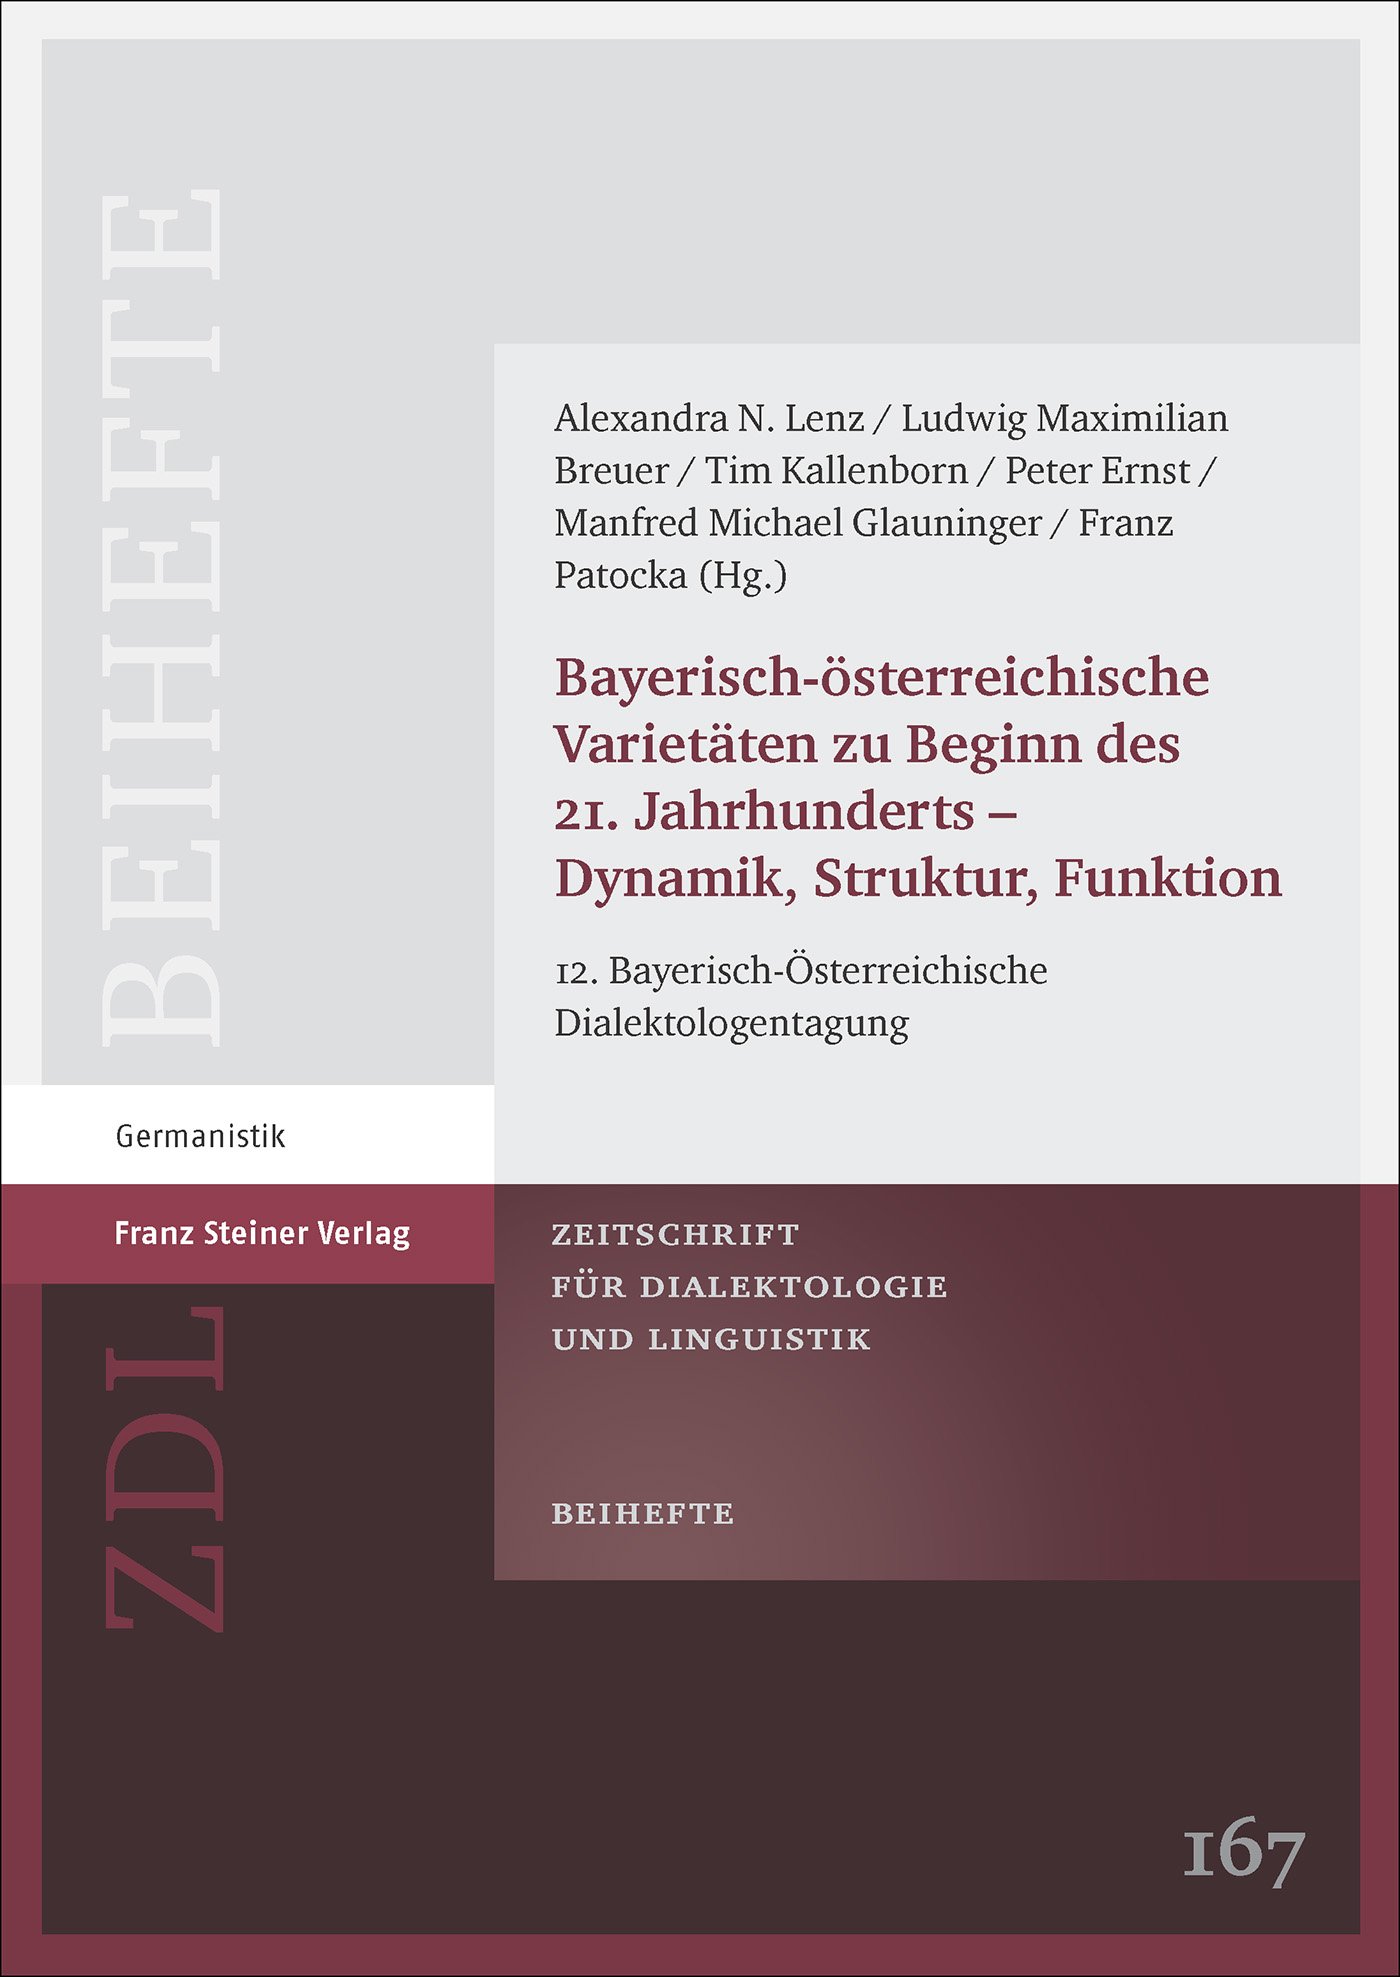 Bayerisch-österreichische Varietäten zu Beginn des 21. Jahrhunderts – Dynamik, Struktur, Funktion